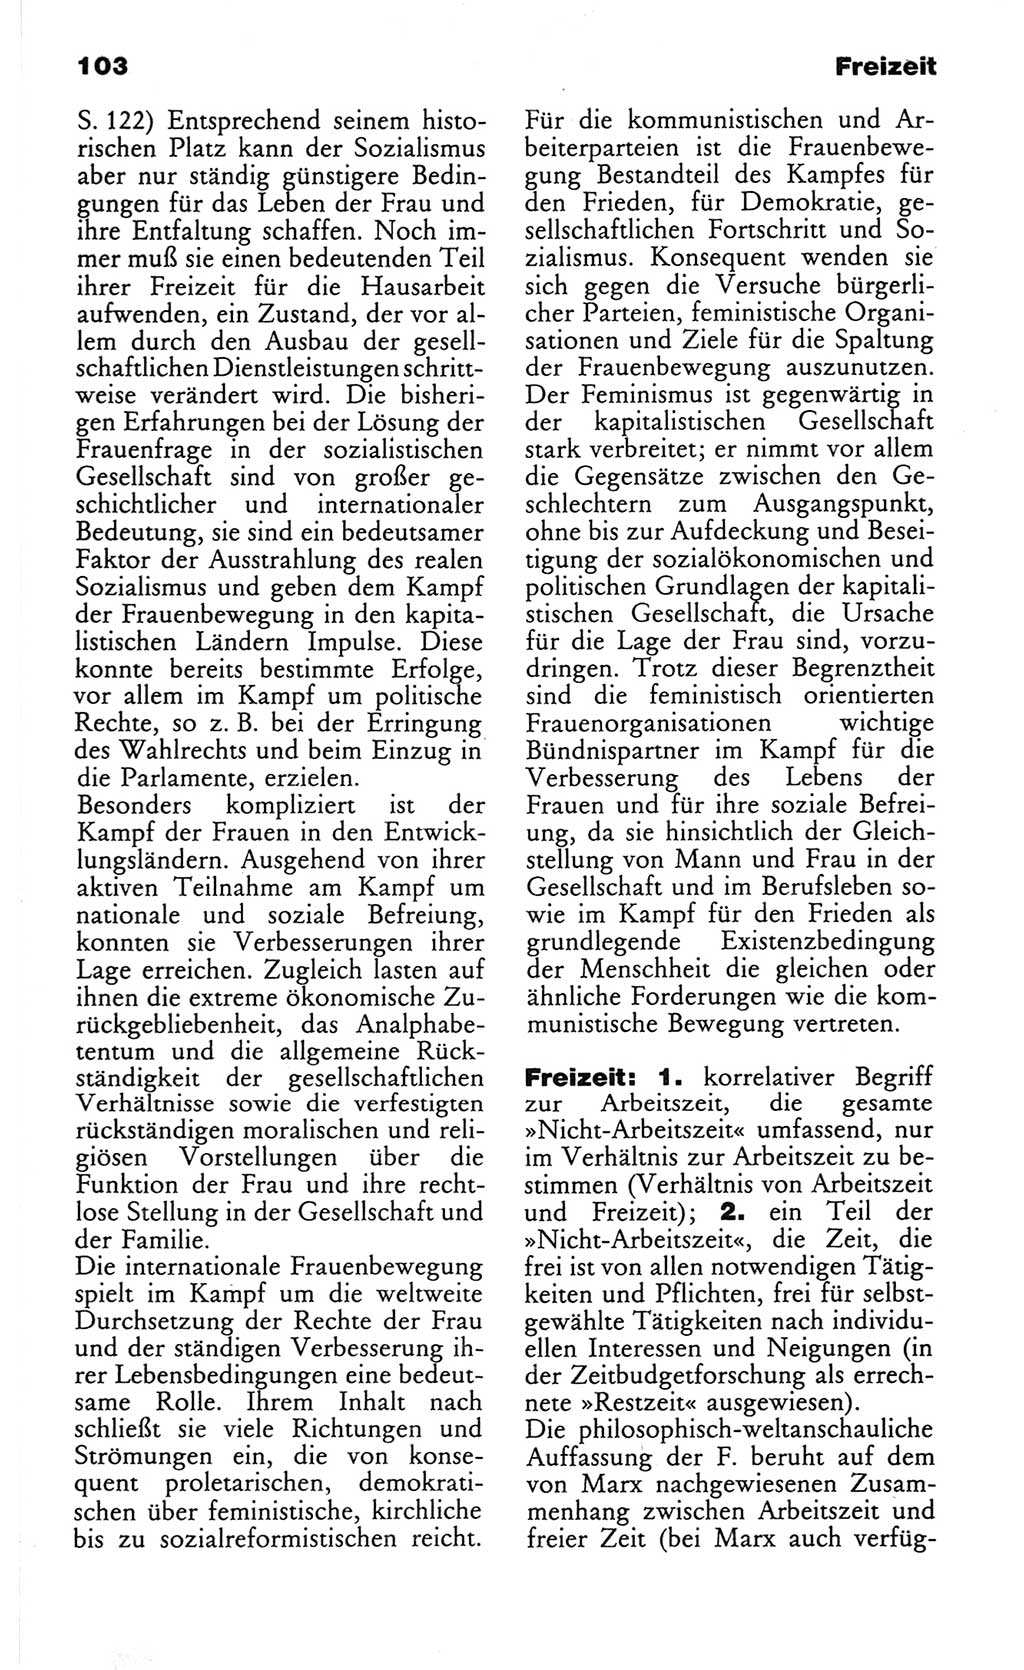 Wörterbuch des wissenschaftlichen Kommunismus [Deutsche Demokratische Republik (DDR)] 1982, Seite 103 (Wb. wiss. Komm. DDR 1982, S. 103)